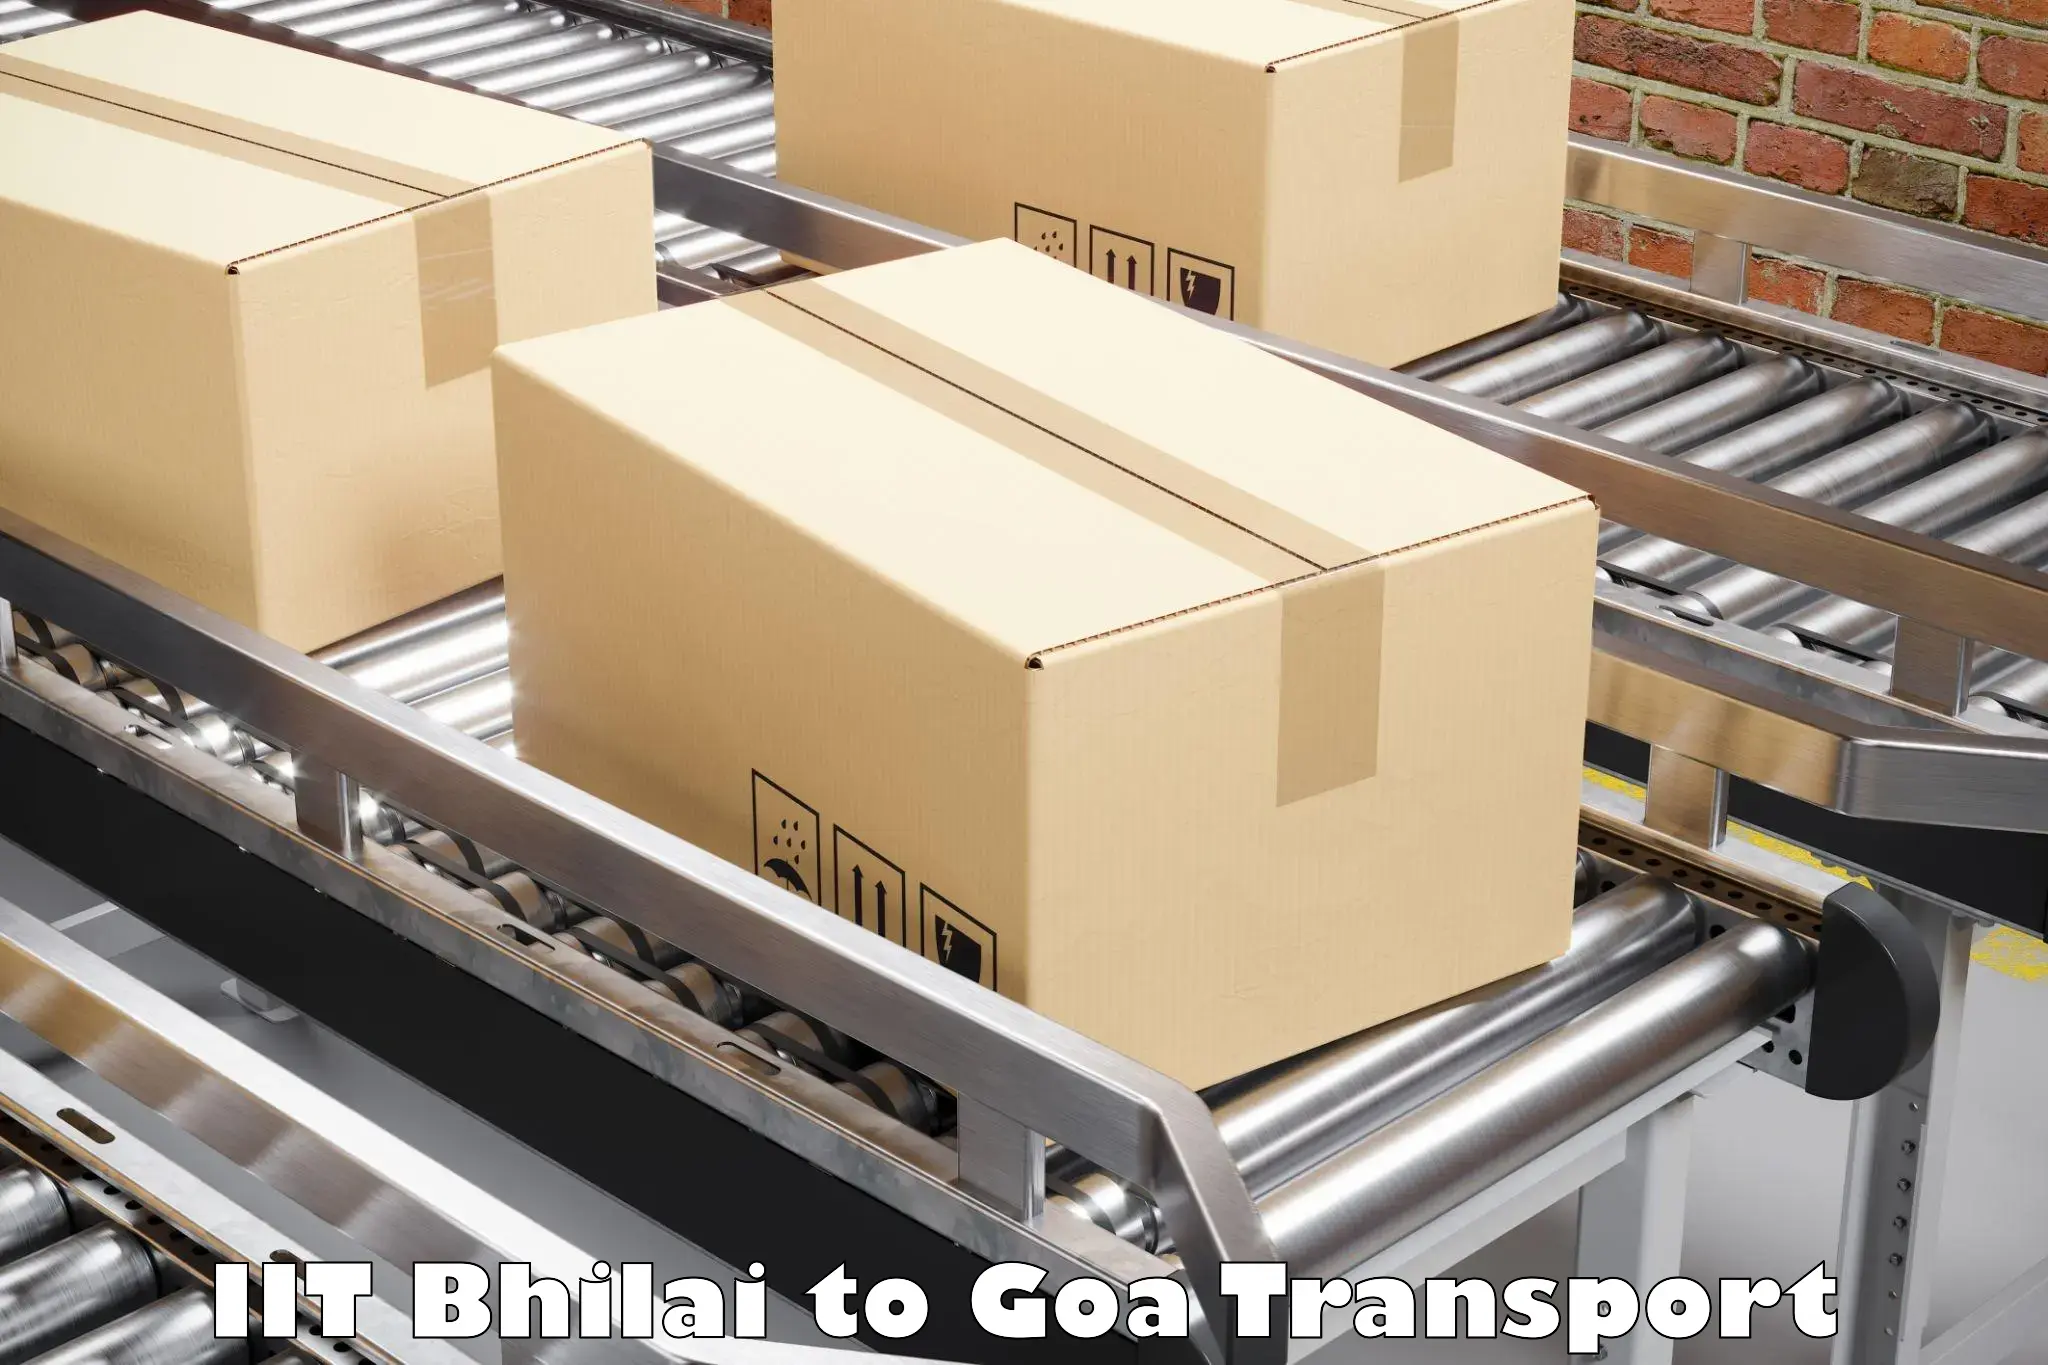 Container transport service IIT Bhilai to Bicholim